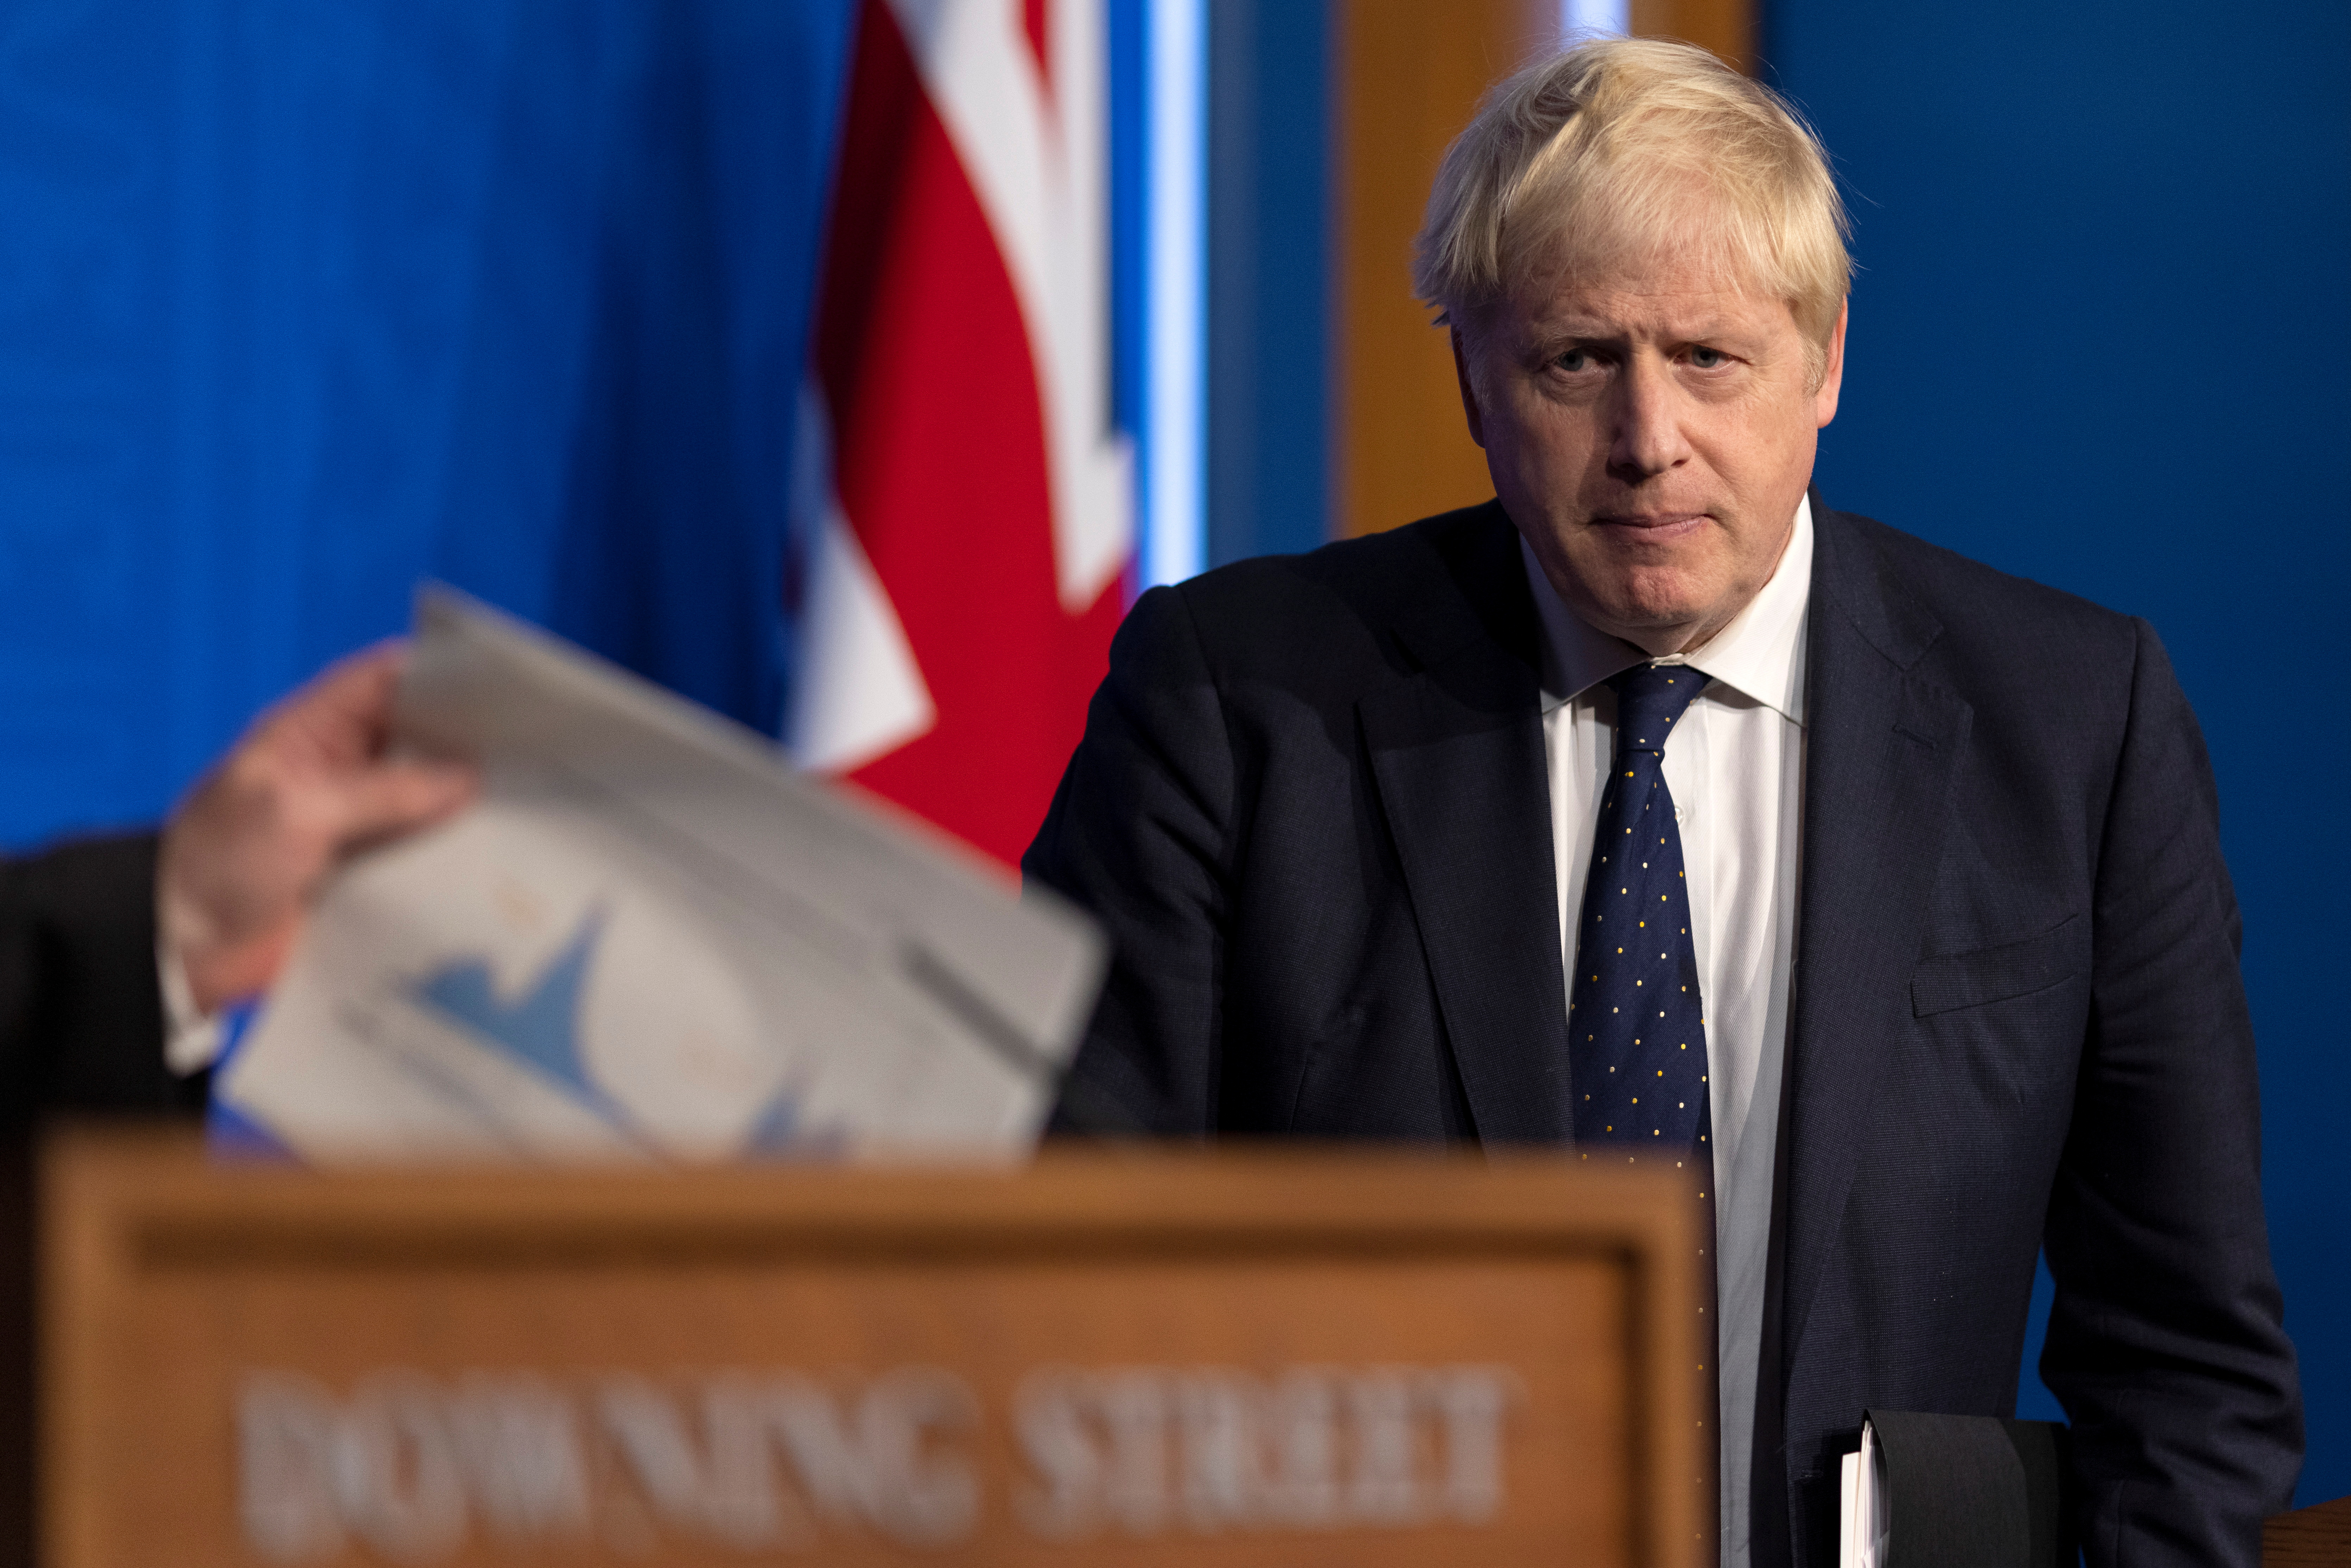 El libro critica duramente la gestión sanitaria de Boris Johnson: “La primera parte de la pandemia fue un caos organizativo, con un primer ministro ausente". (Dan Kitwood/REUTERS)